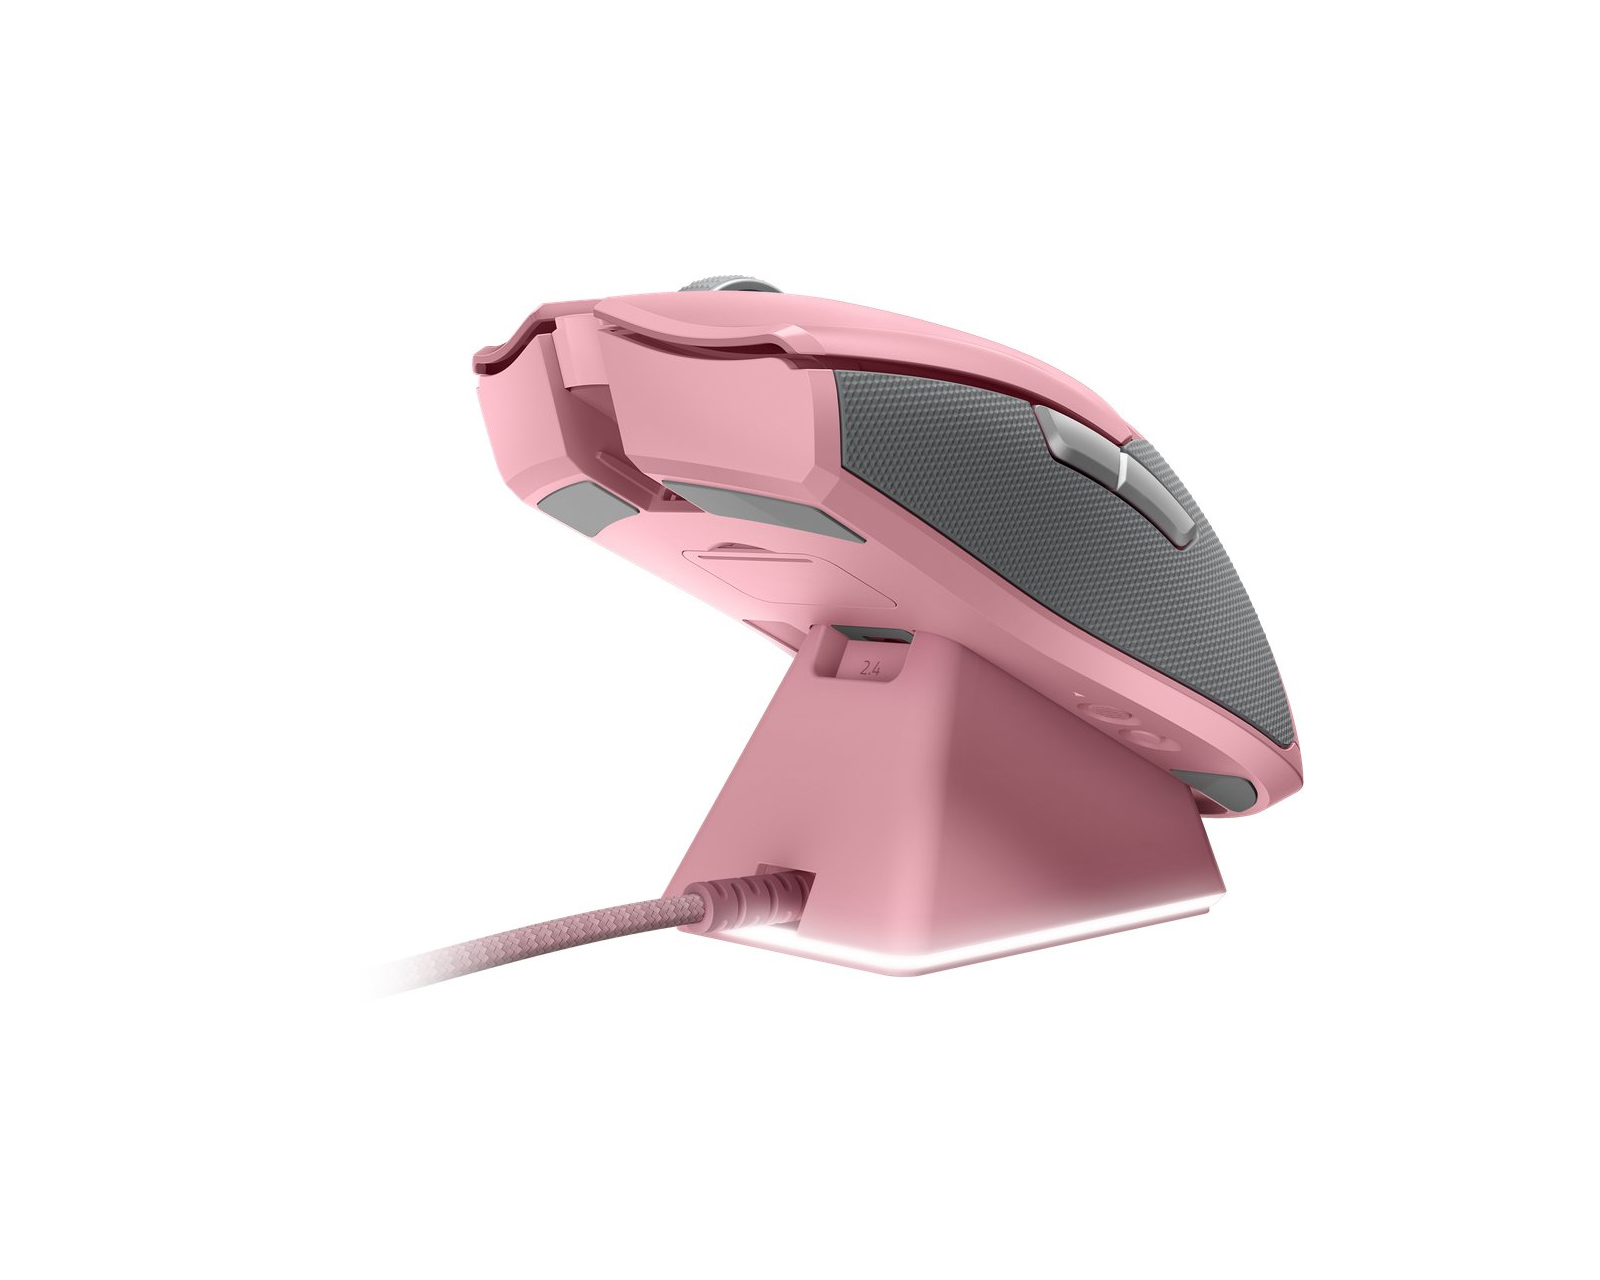 11404円 定番 1週間以内発送 Razer Viper Ultimate Quartz Pink ワイヤレス ゲーミングマウス ピンク 高速無線 軽量 74g Focus センサー 20000DPI 光学スイッチ 8ボタン 充電スタンド付 Chroma RZ01-03050300-R3M1